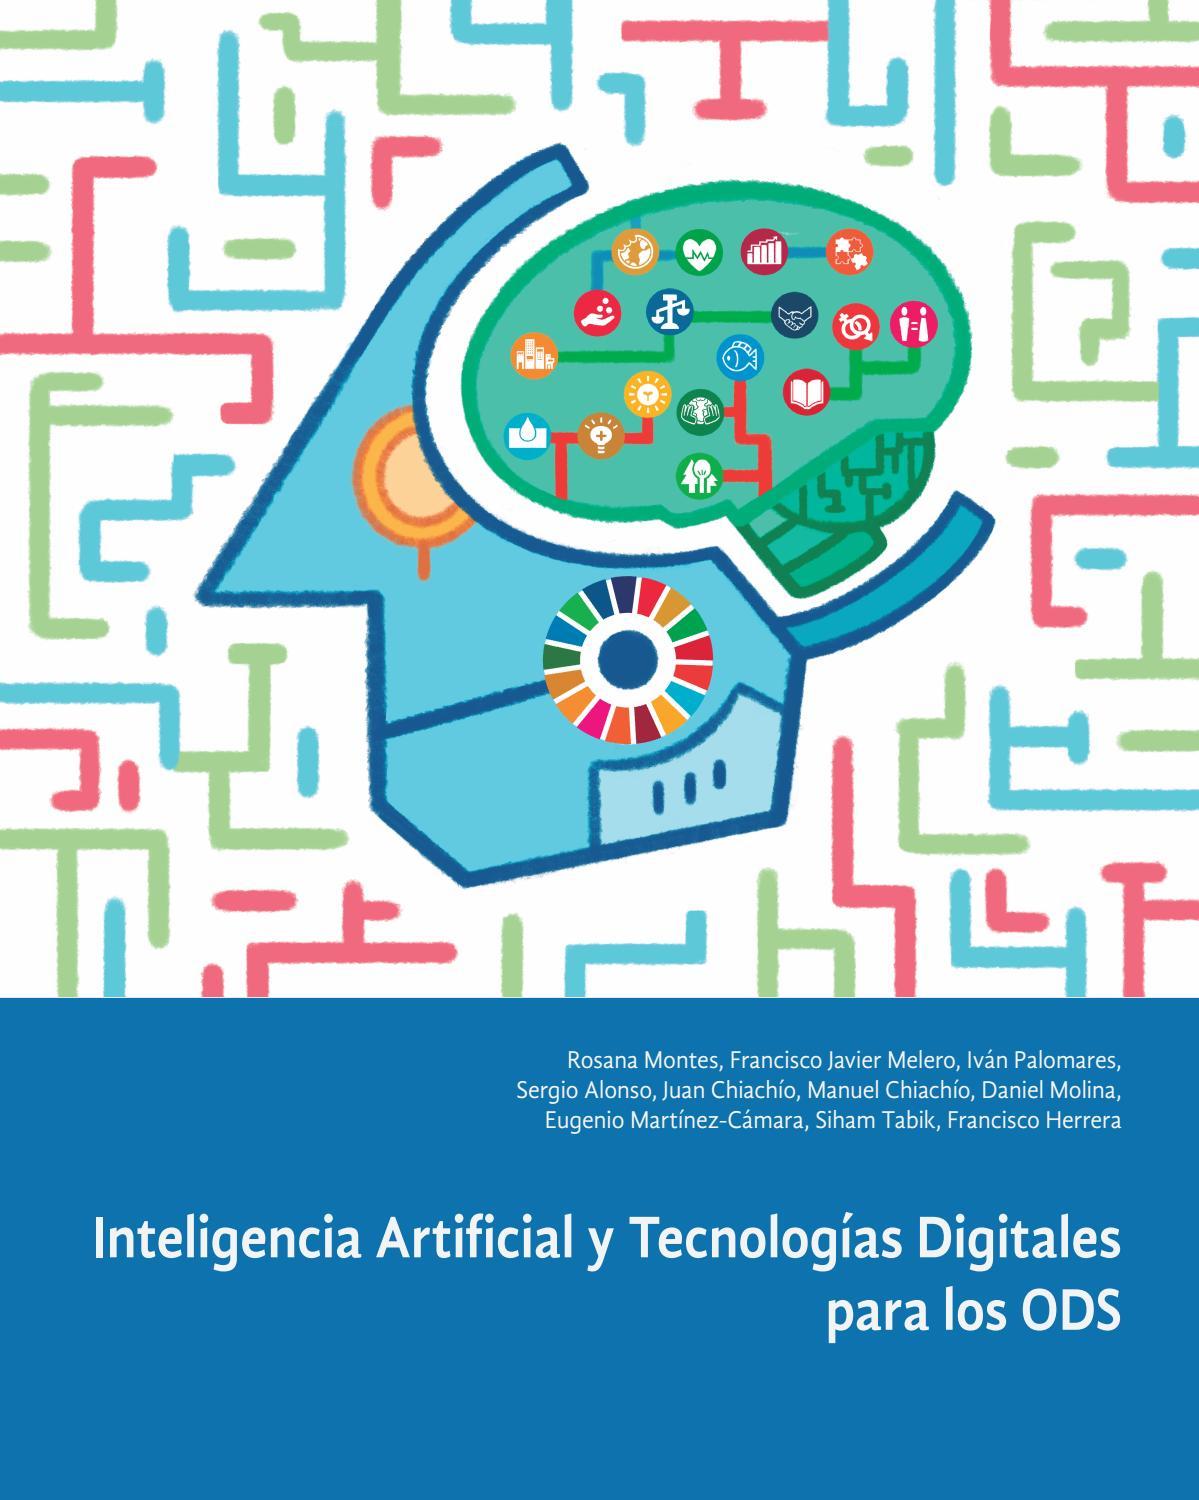 Las 10 universidades españolas más reconocidas para estudiar inteligencia artificial